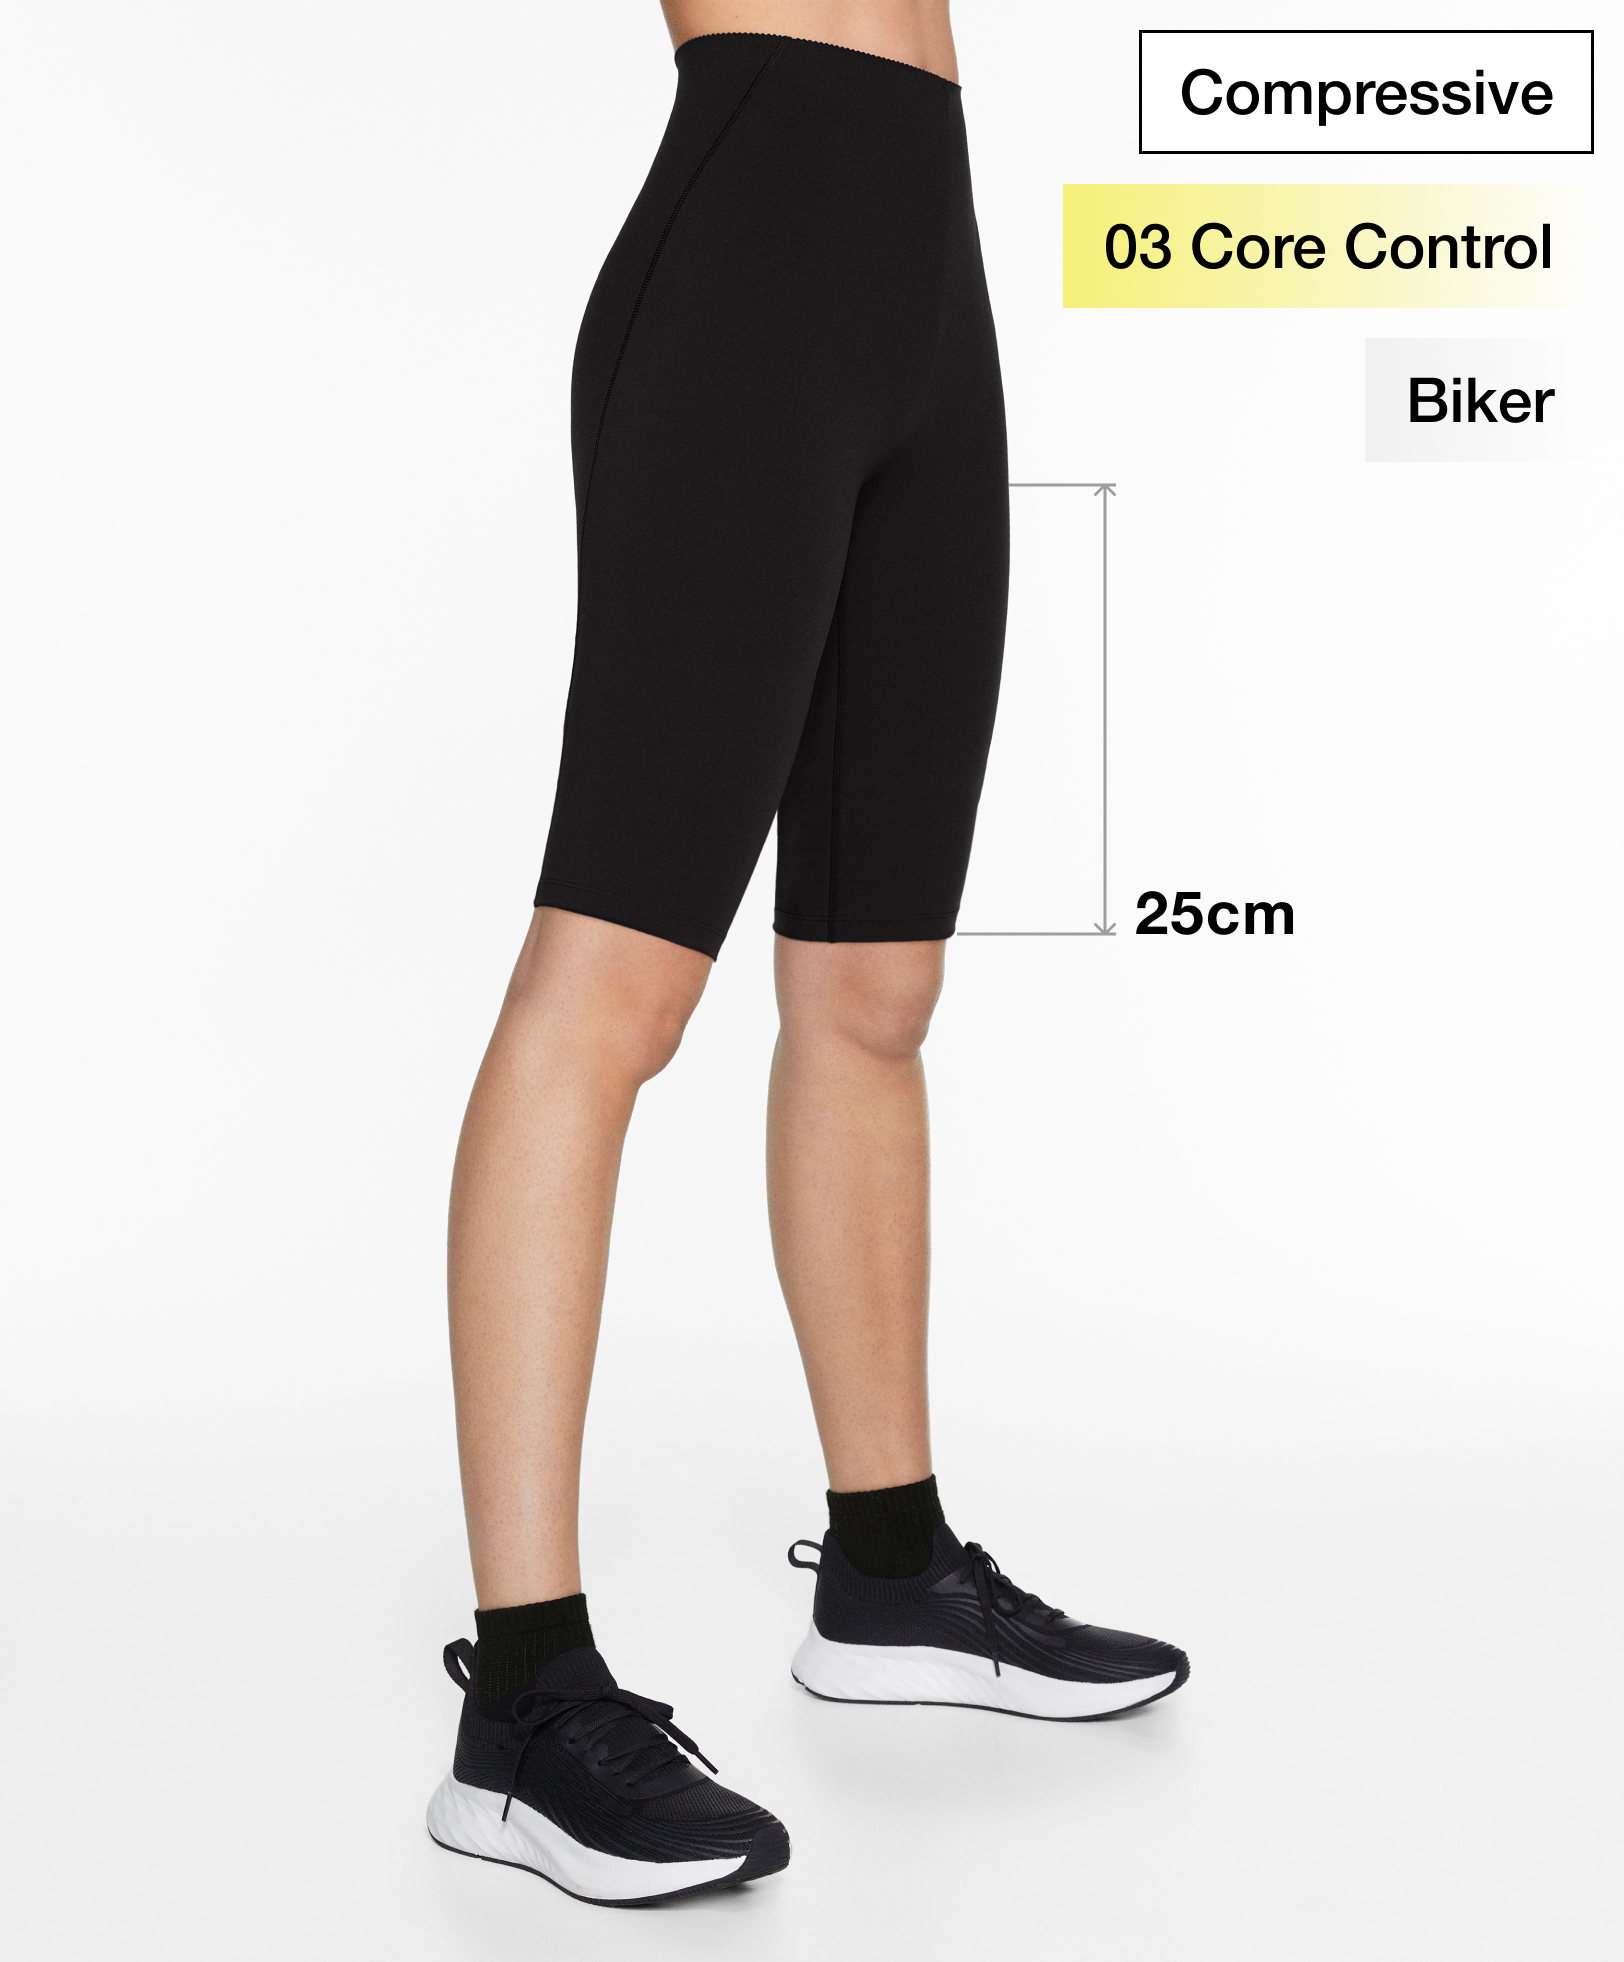 Leggings cycliste compressive core control 25 cm